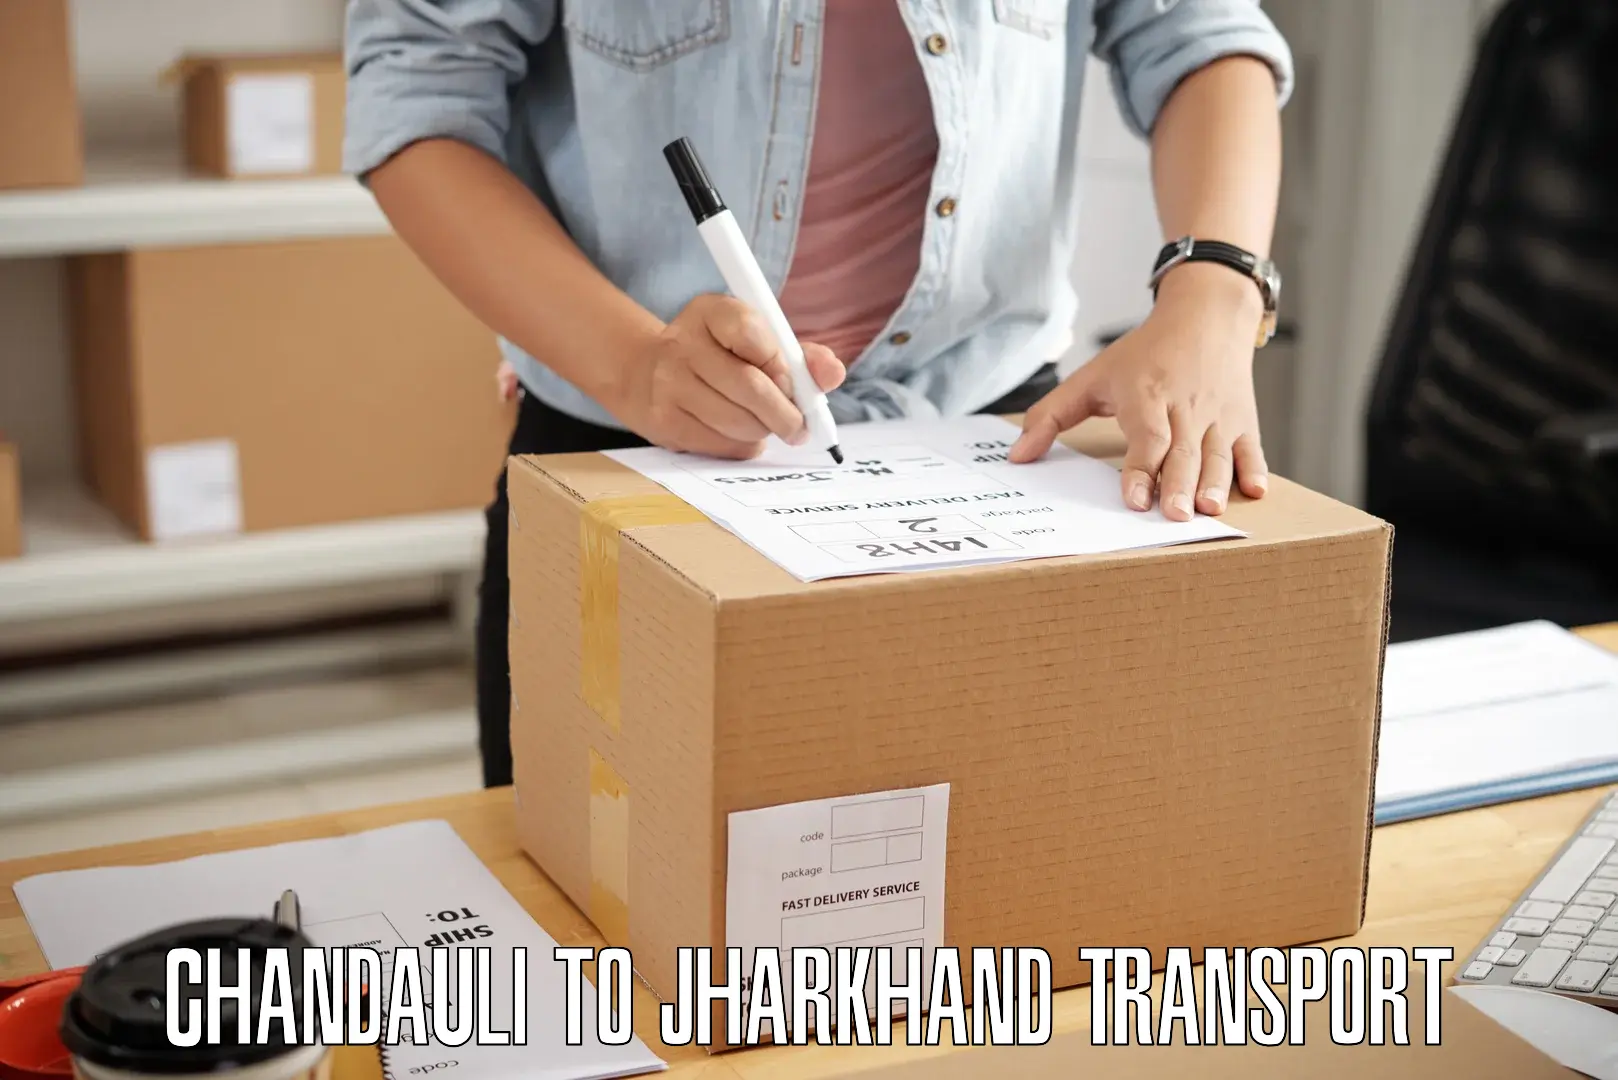 Nearest transport service Chandauli to Chandankiyari